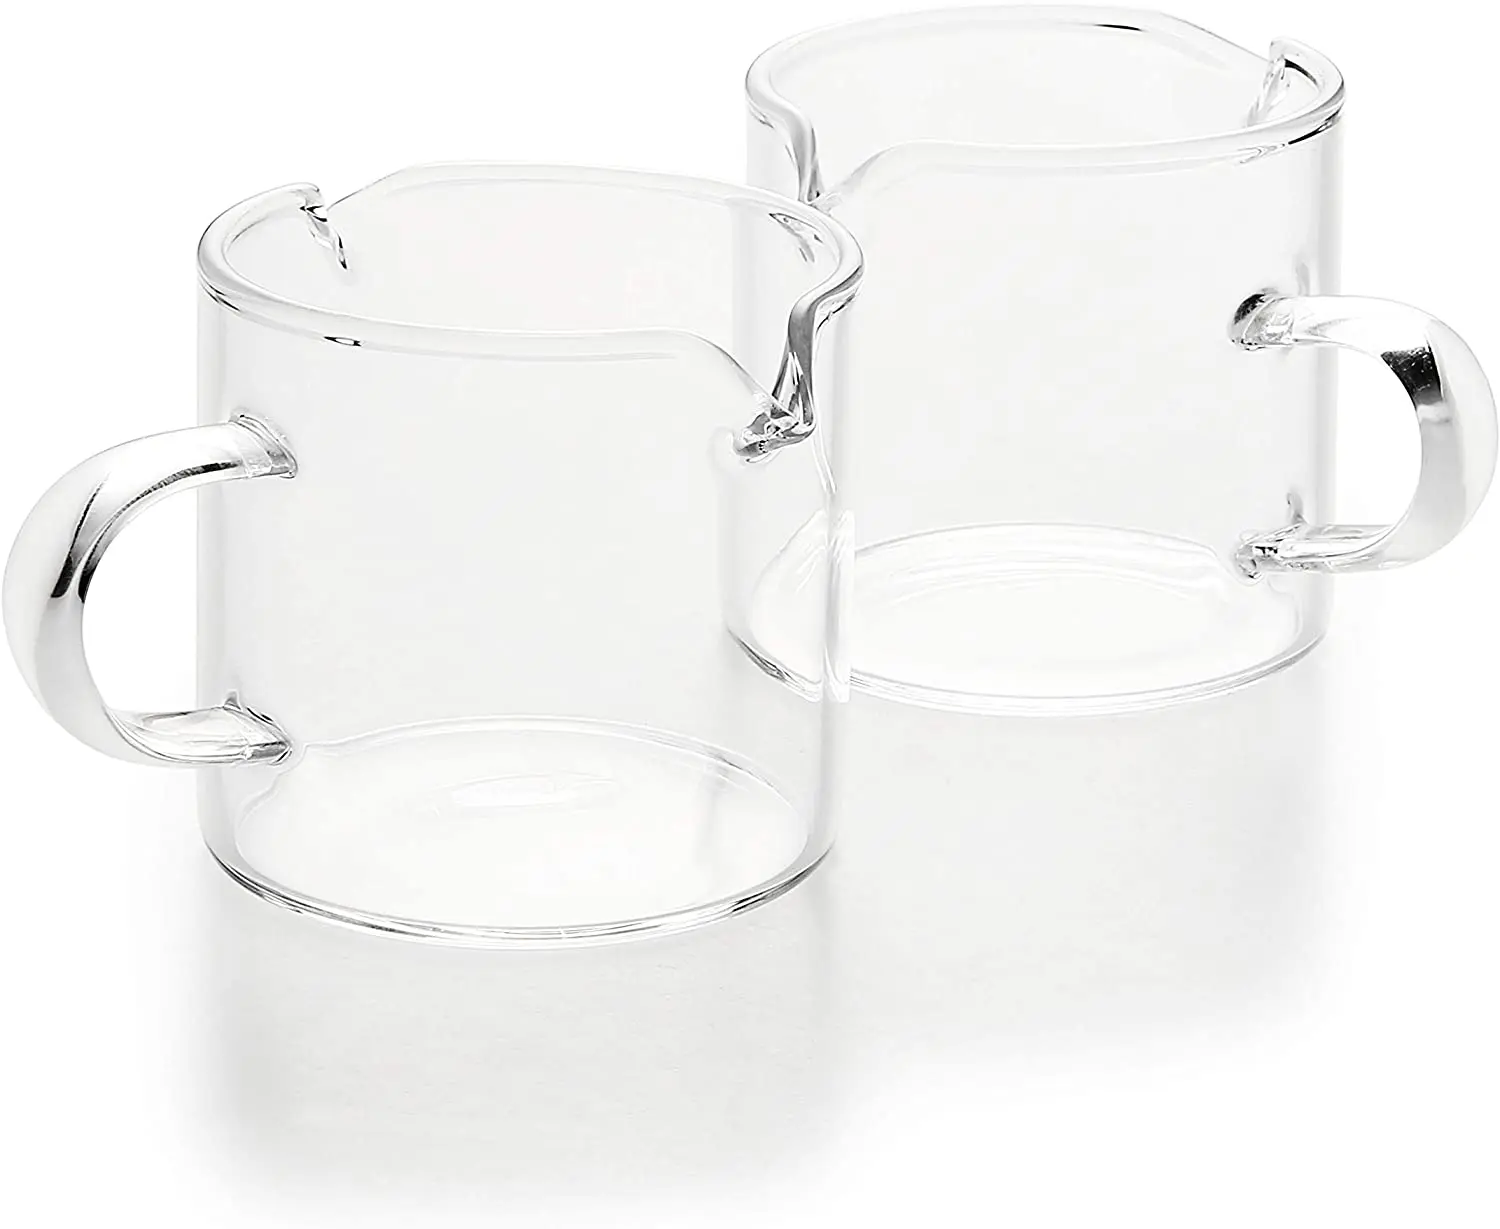 120 Ml Shot Glasses Espresso Parts Double Spouts Milk Cup Clear Glass - Buy  120 Ml Shot Glasses Espresso Parts Double Spouts Milk Cup Clear Glass  Product on